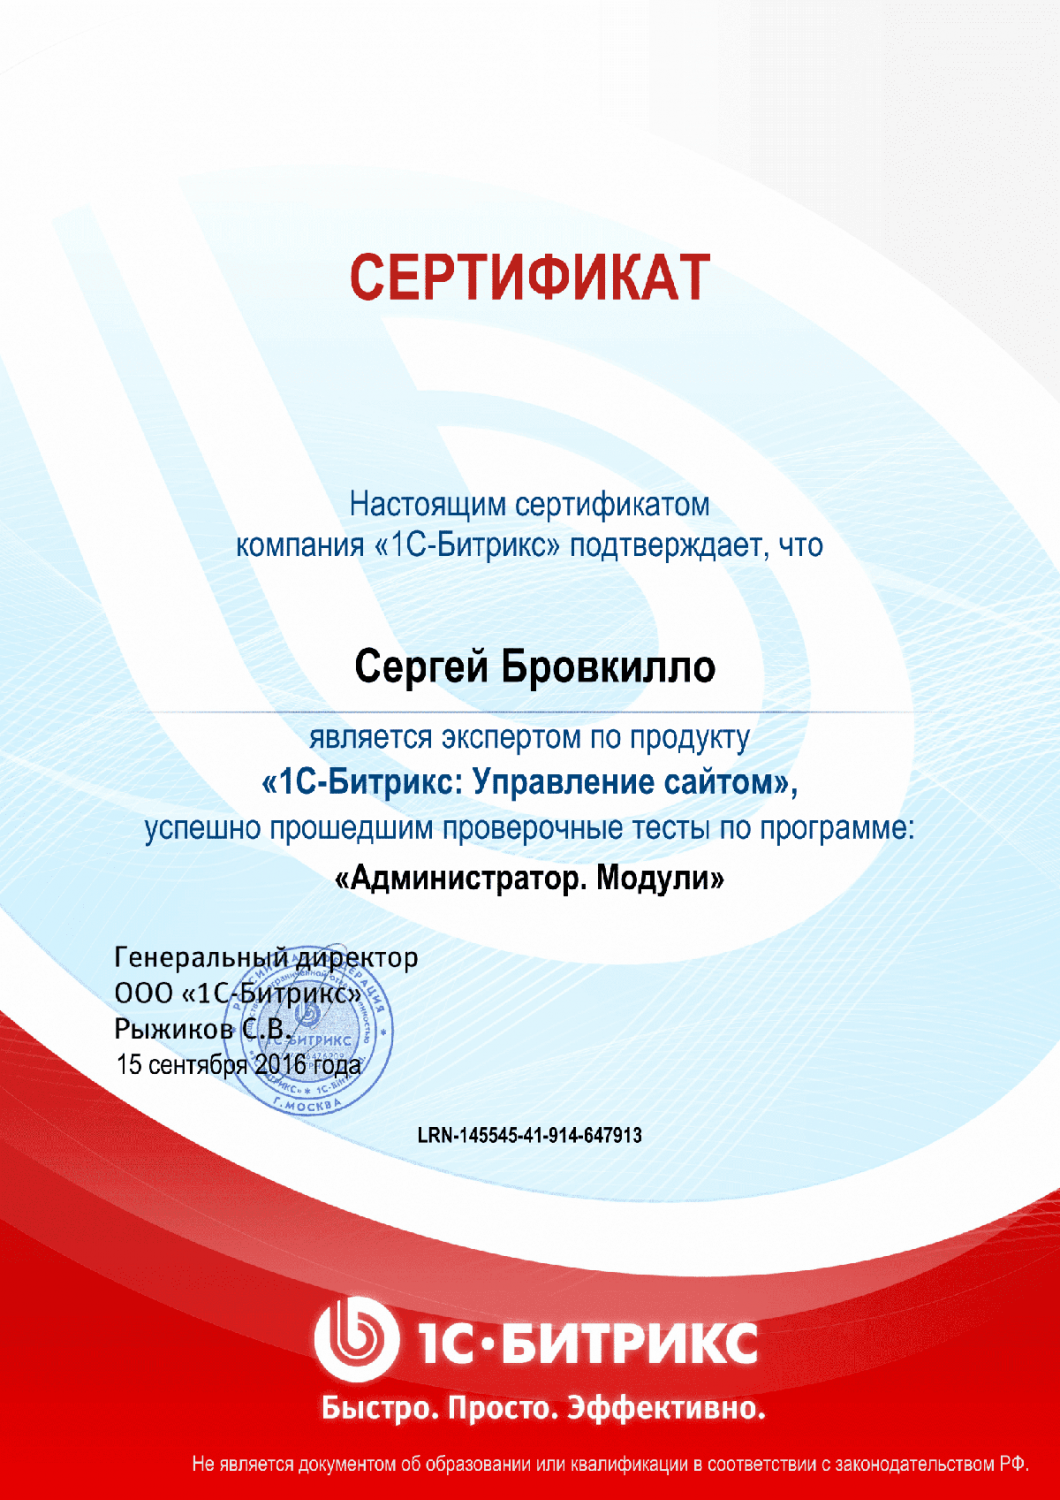 Сертификат эксперта по программе "Администратор. Модули" в Хабаровска